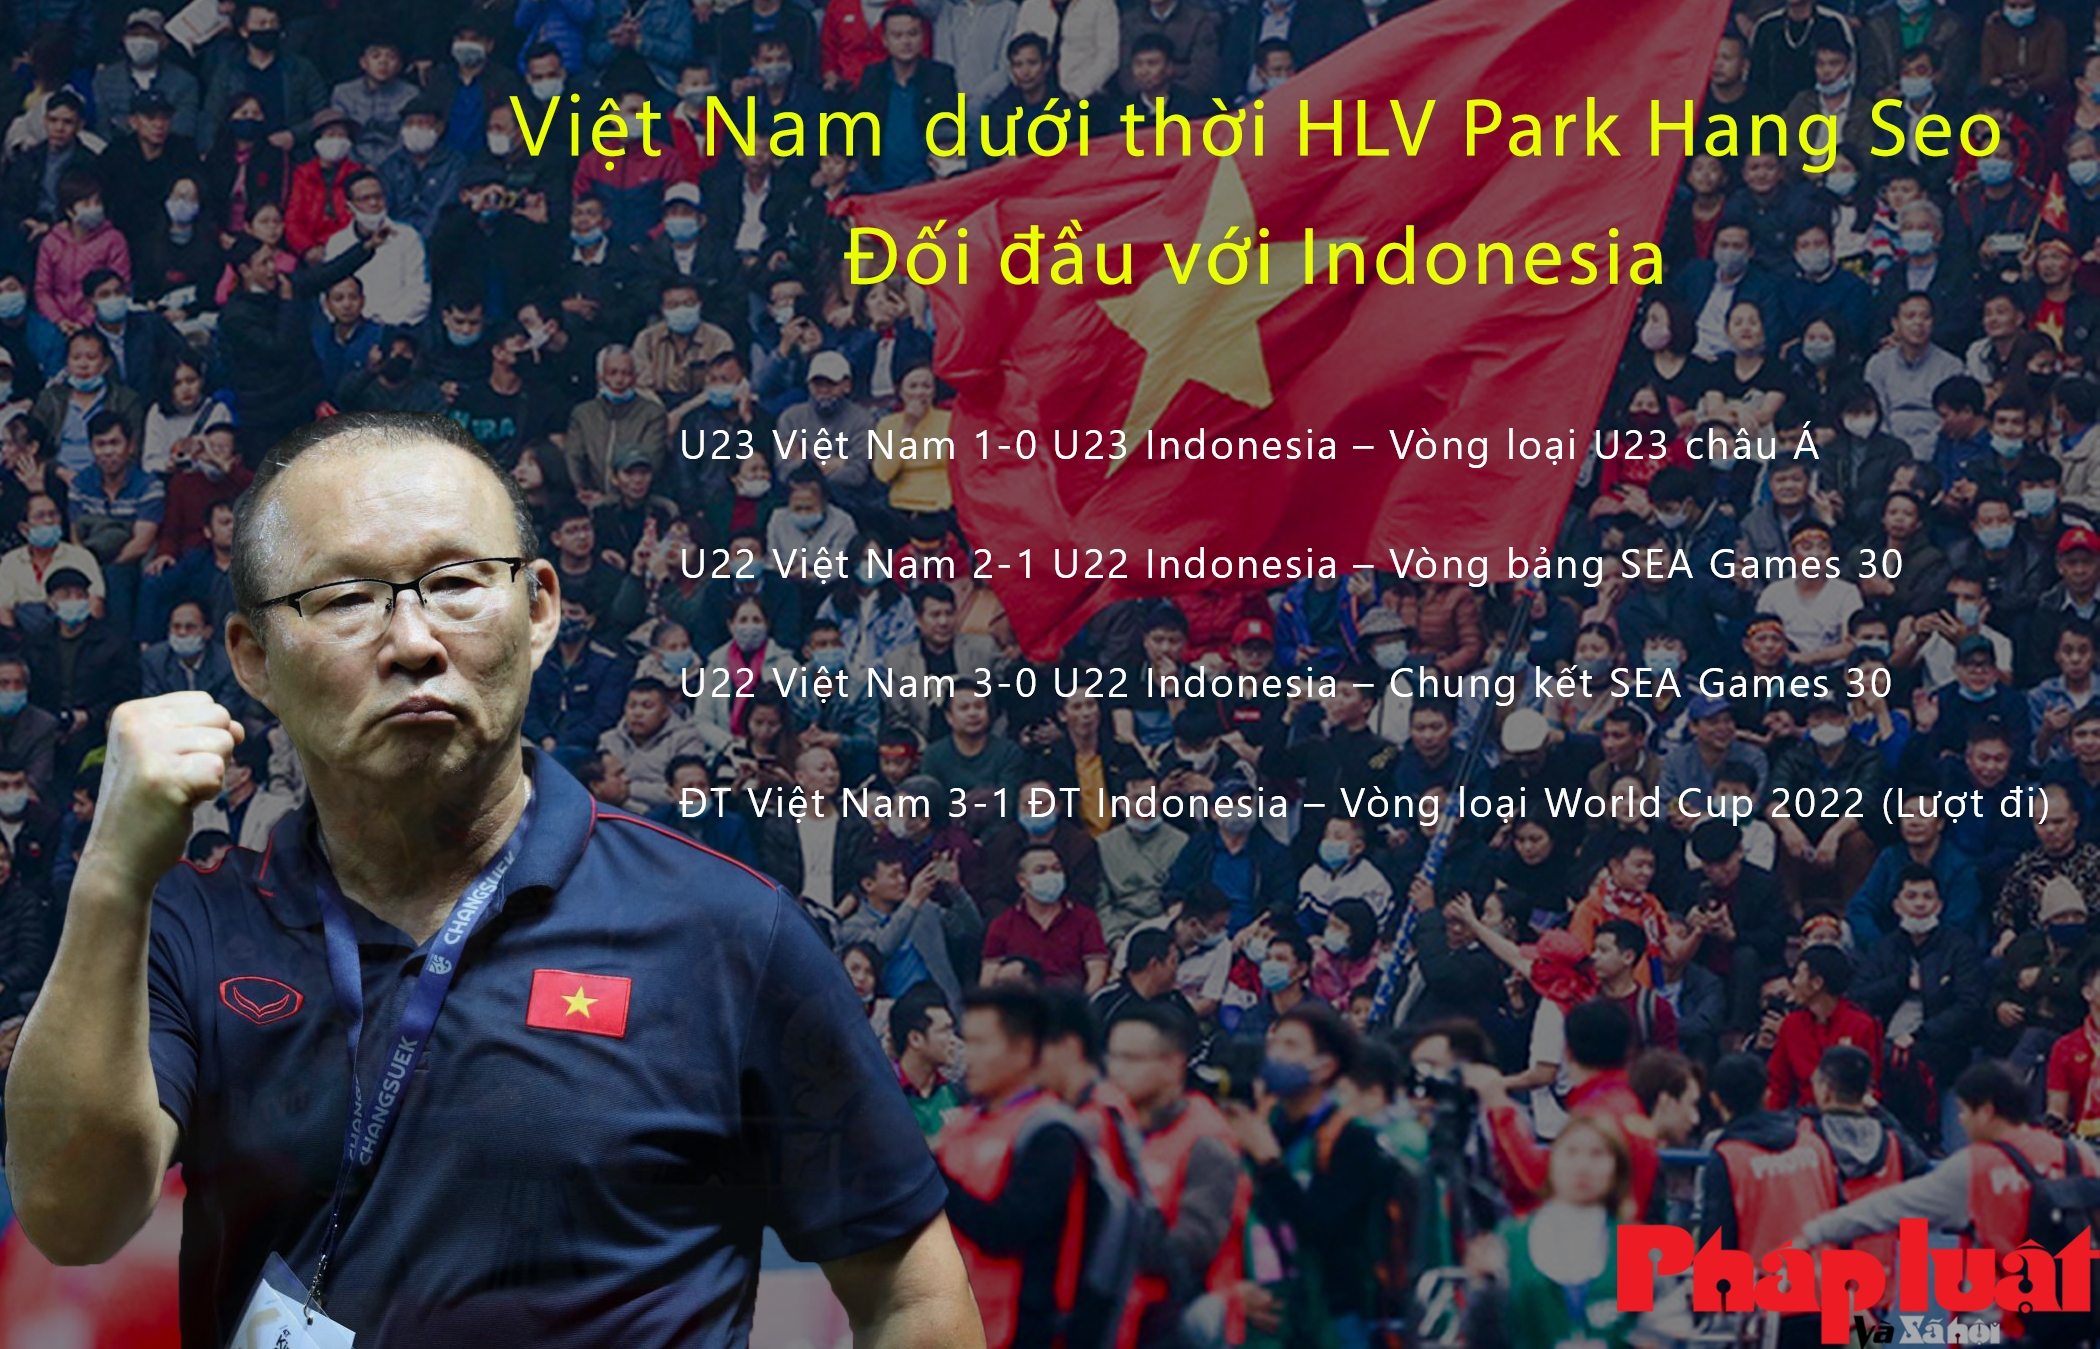 Việt Nam dưới thời HLV Park Hang Seo toàn thắng trước Indonesia